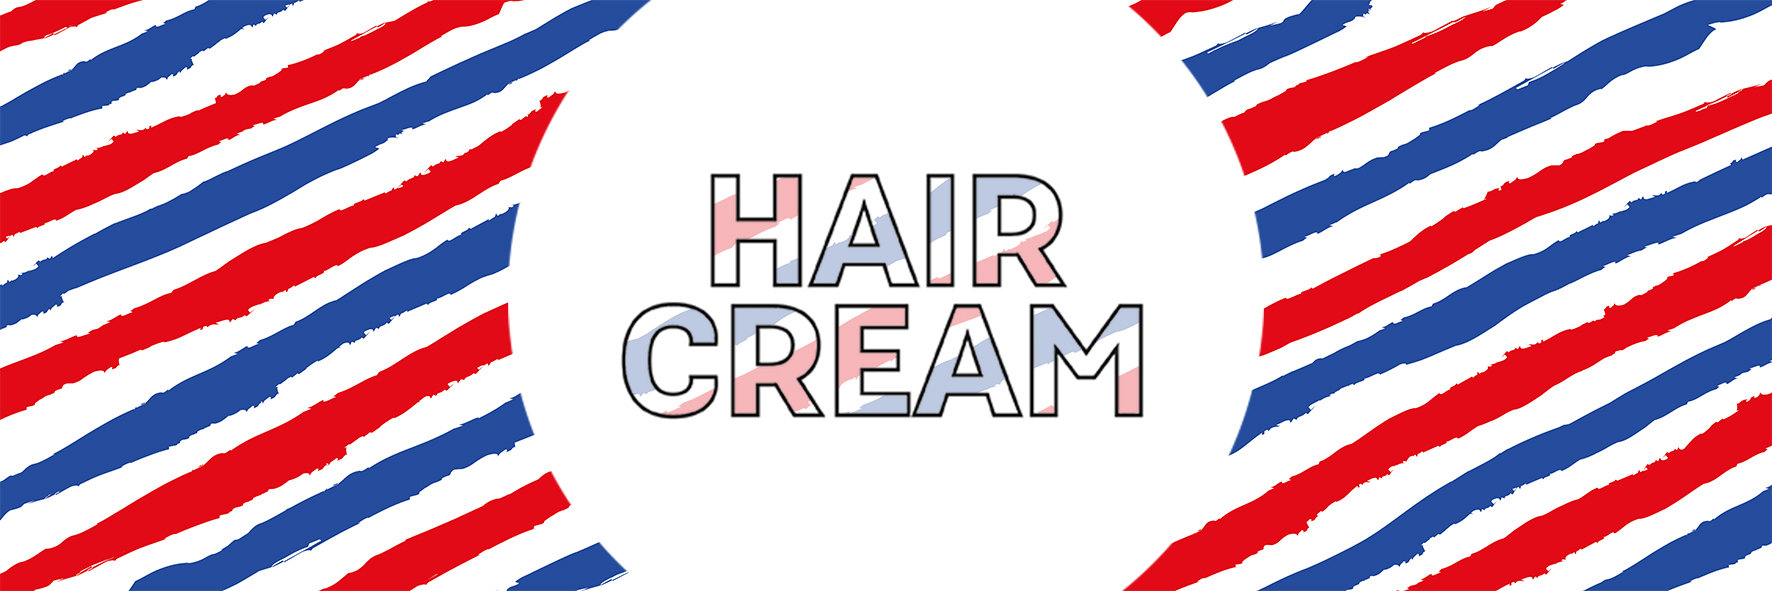 Hair-Cream